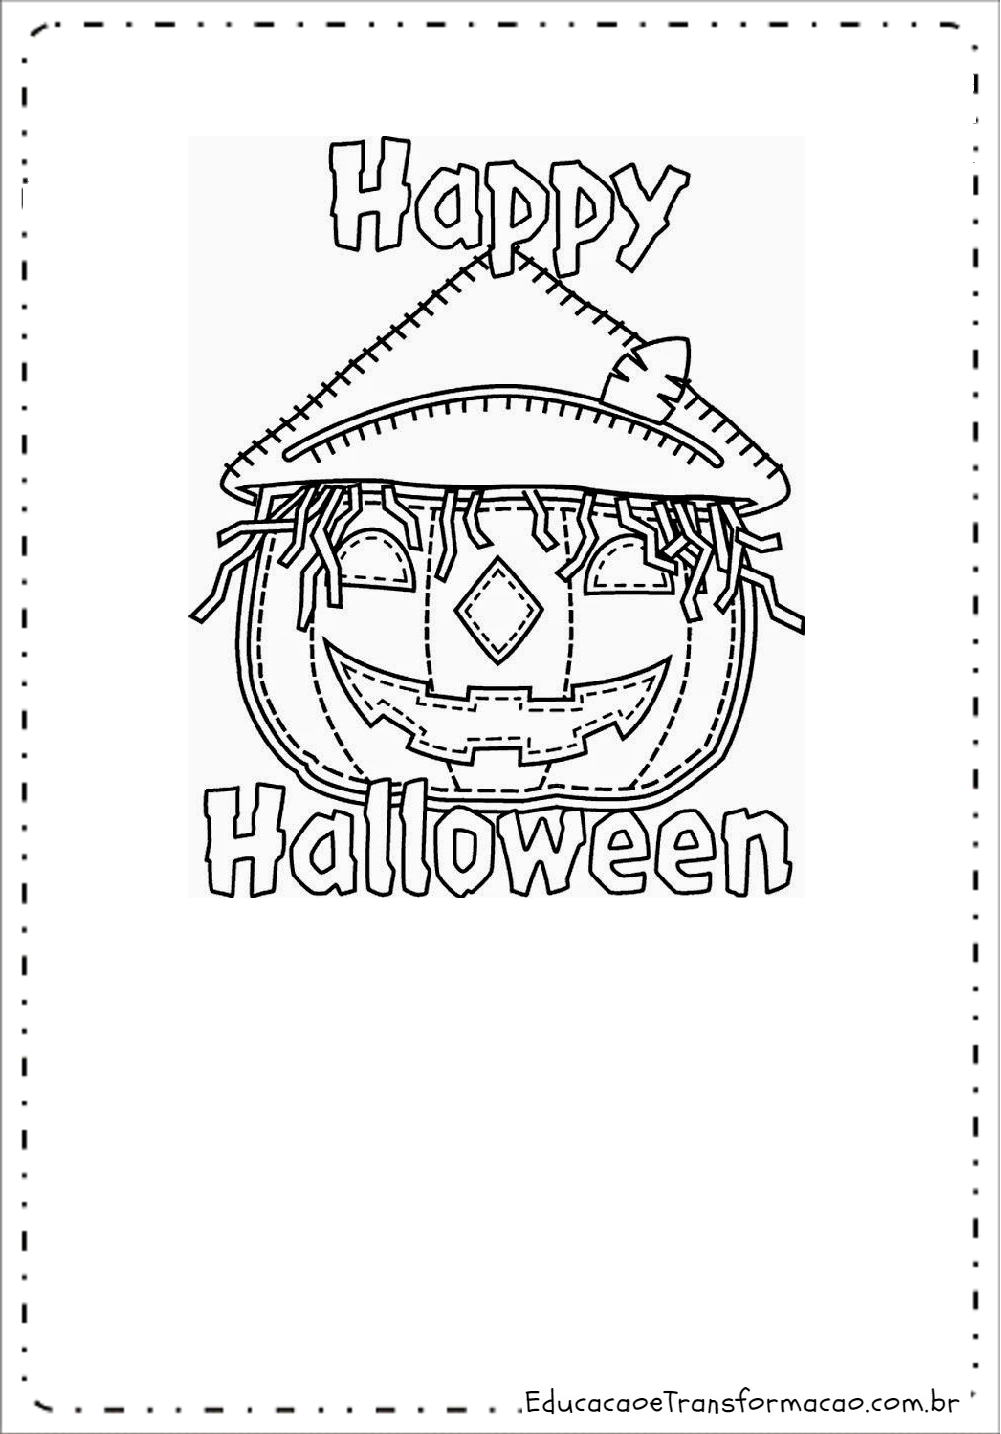 Mensagens Dia das Bruxas - Halloween - Frases Curtas e Cartões.